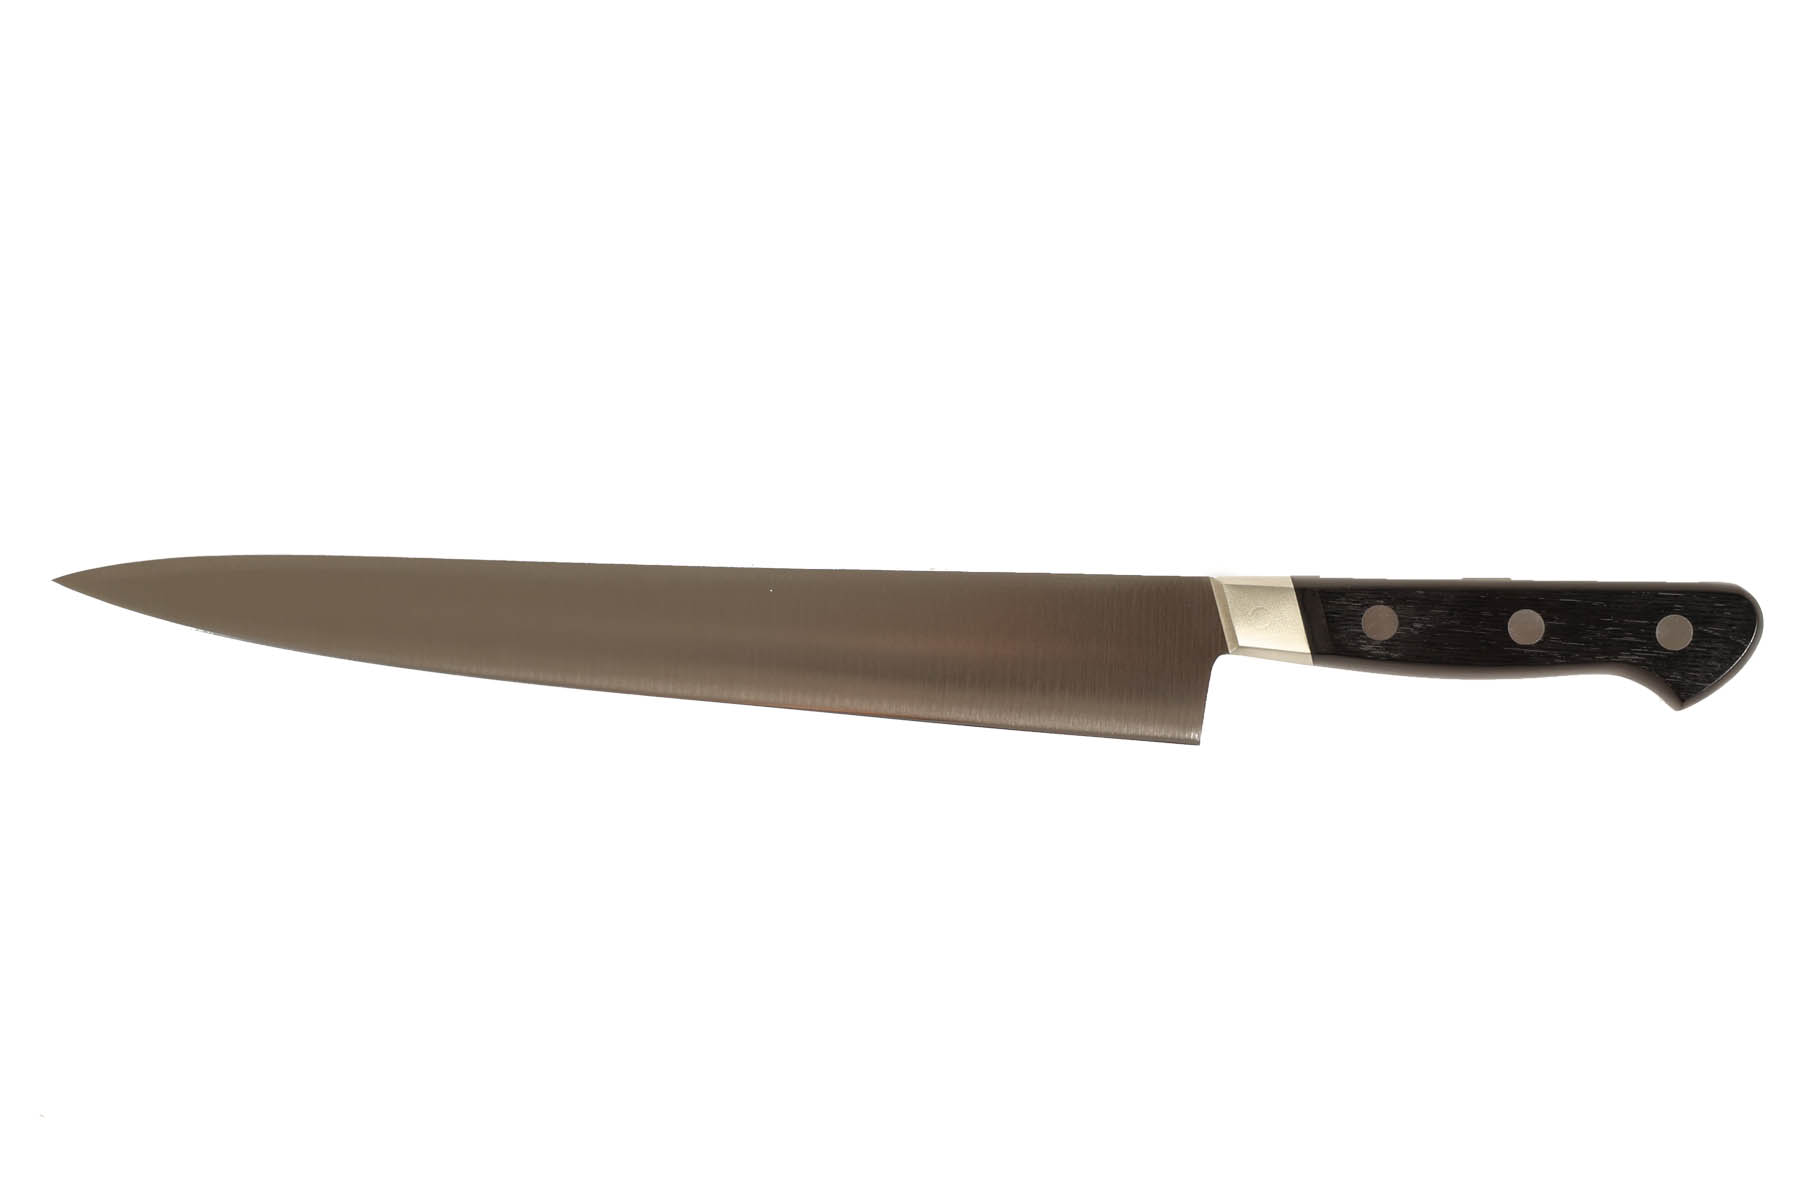 Couteau japonais Misono UX10 - Couteau sujihiki 27 cm